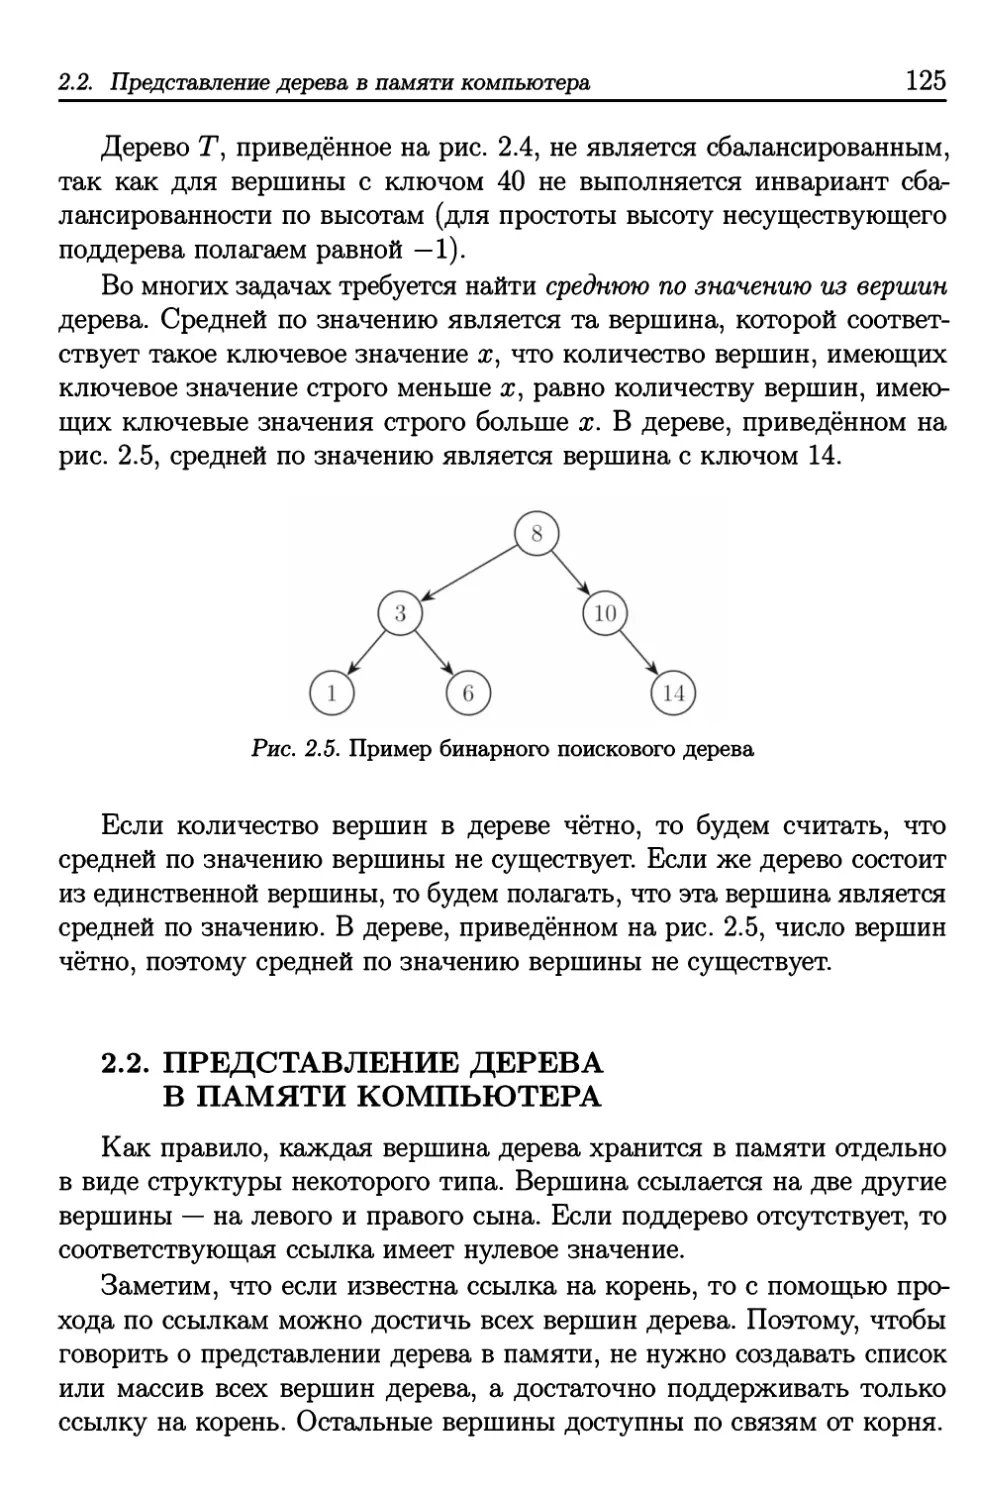 2.2. Представление дерева в памяти компьютера